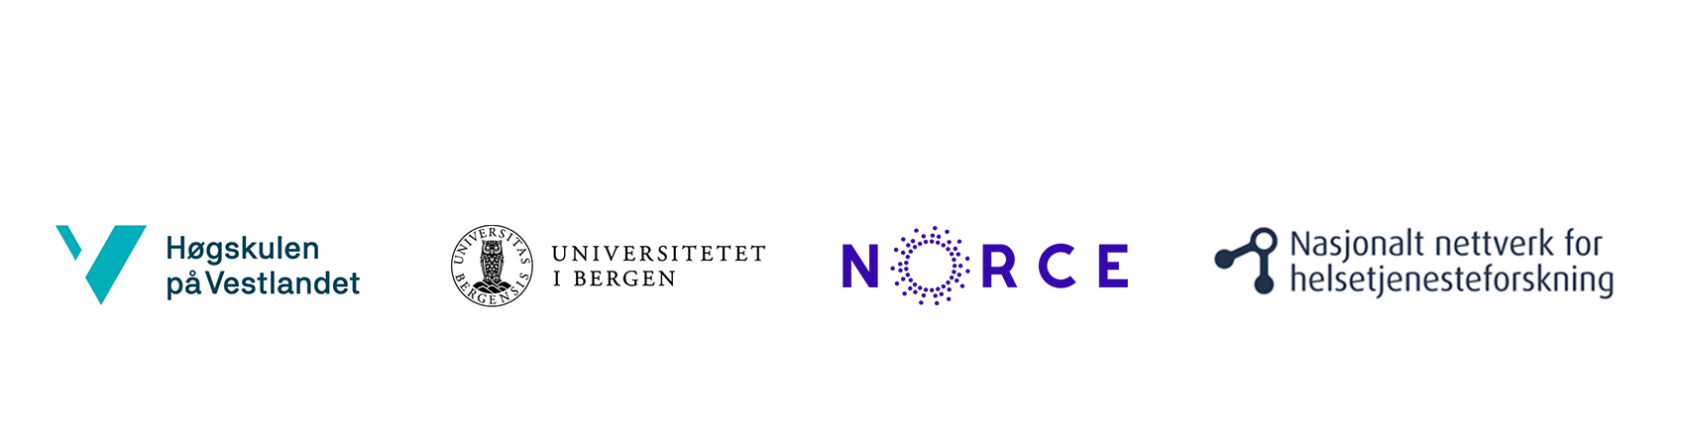 , , Logohvluibnorce, , Logoene til Høgskulen på Vestlandet, Universitetet i Bergen, NORCE og Nasjonalt nettverk for helsetjenesteforskning